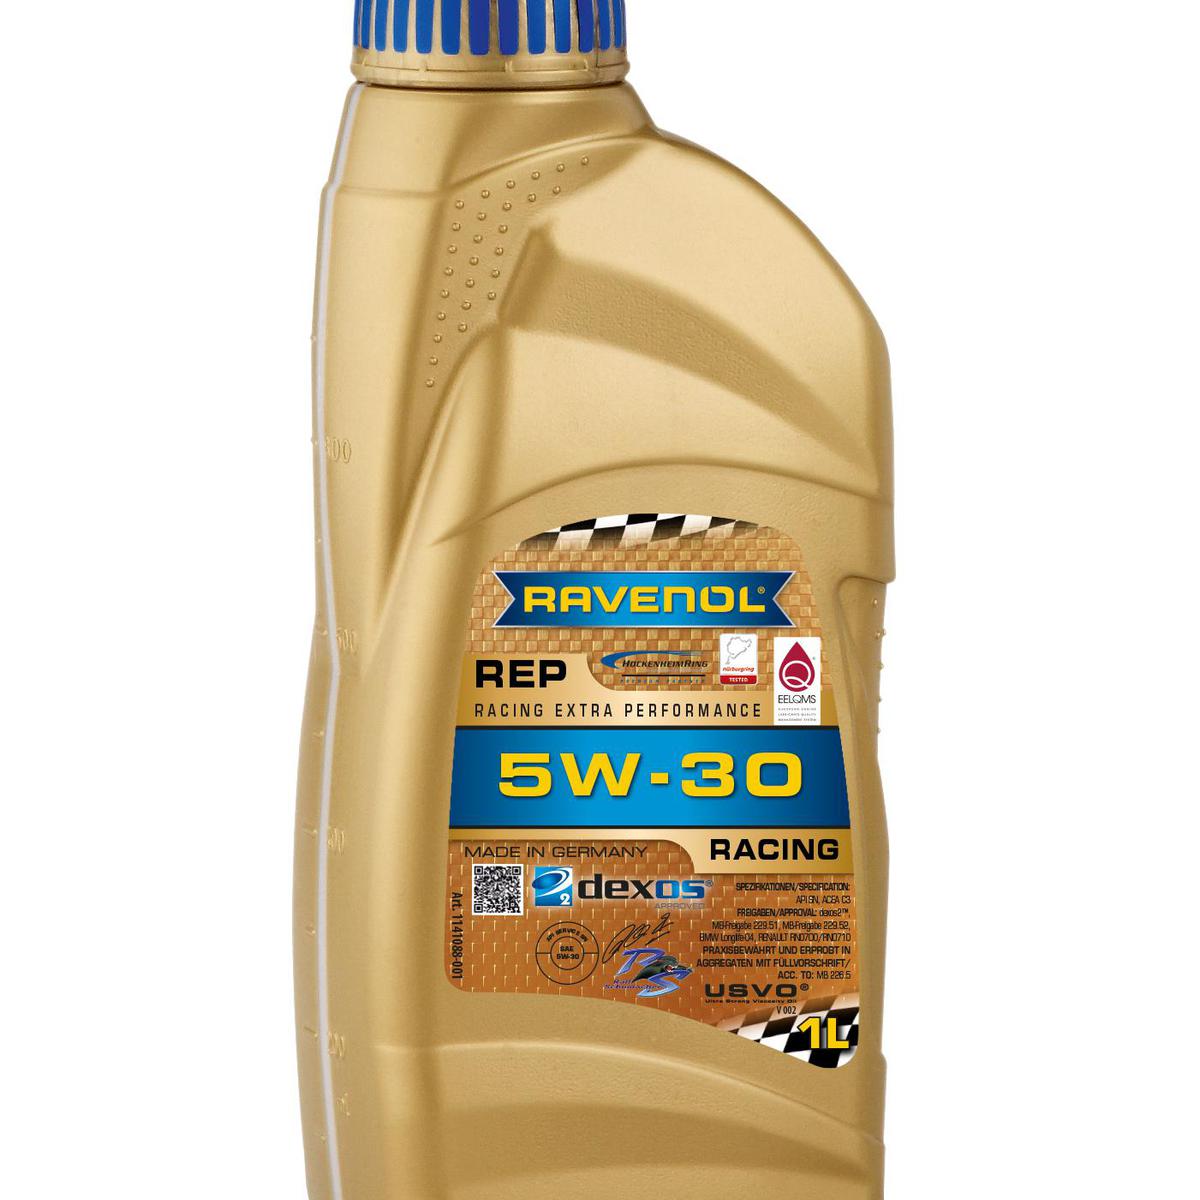 RAVENOL RSP Racing Super Performance SAE 5W-30 fue desarrollado junto con  Ralf Schumacher para el automovilismo y es ideal para